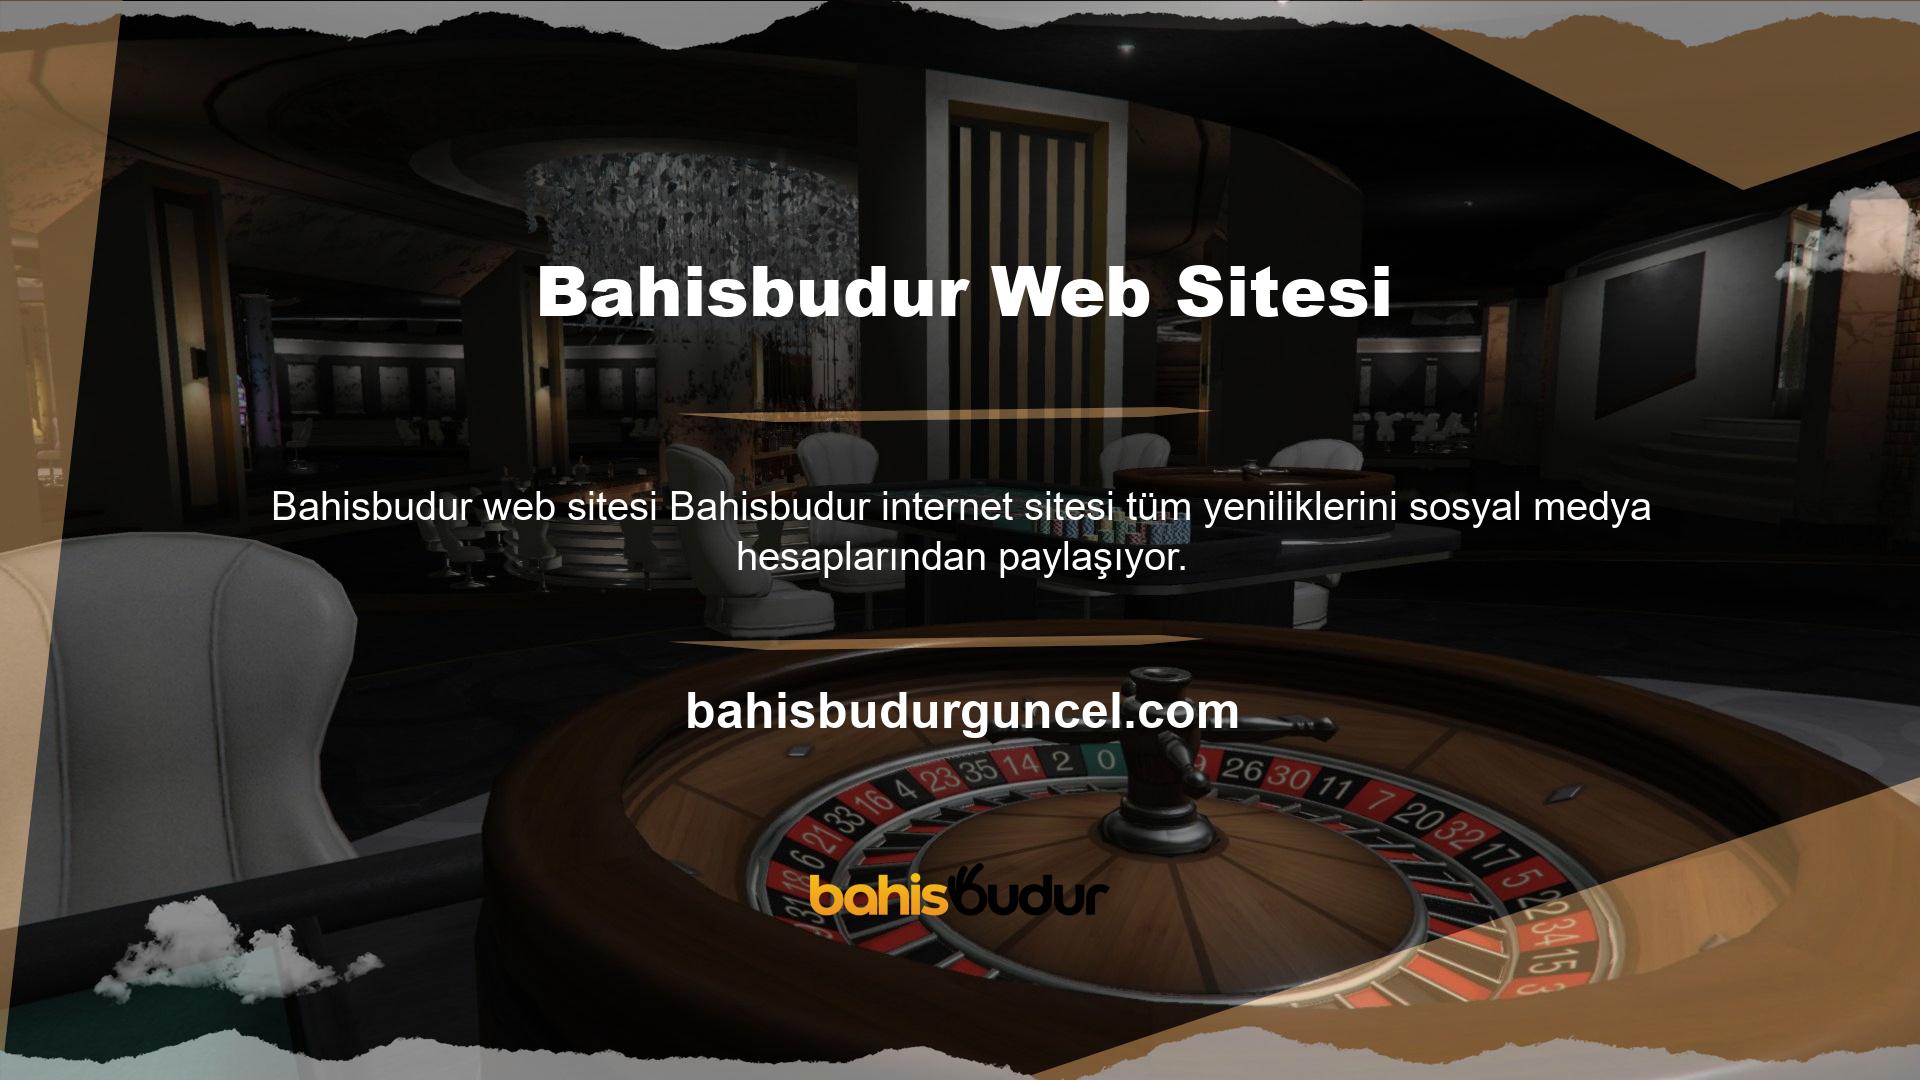 En son güncellemeler için Bahisbudur web sitesi sosyal medya hesaplarını da takip edebilirsiniz